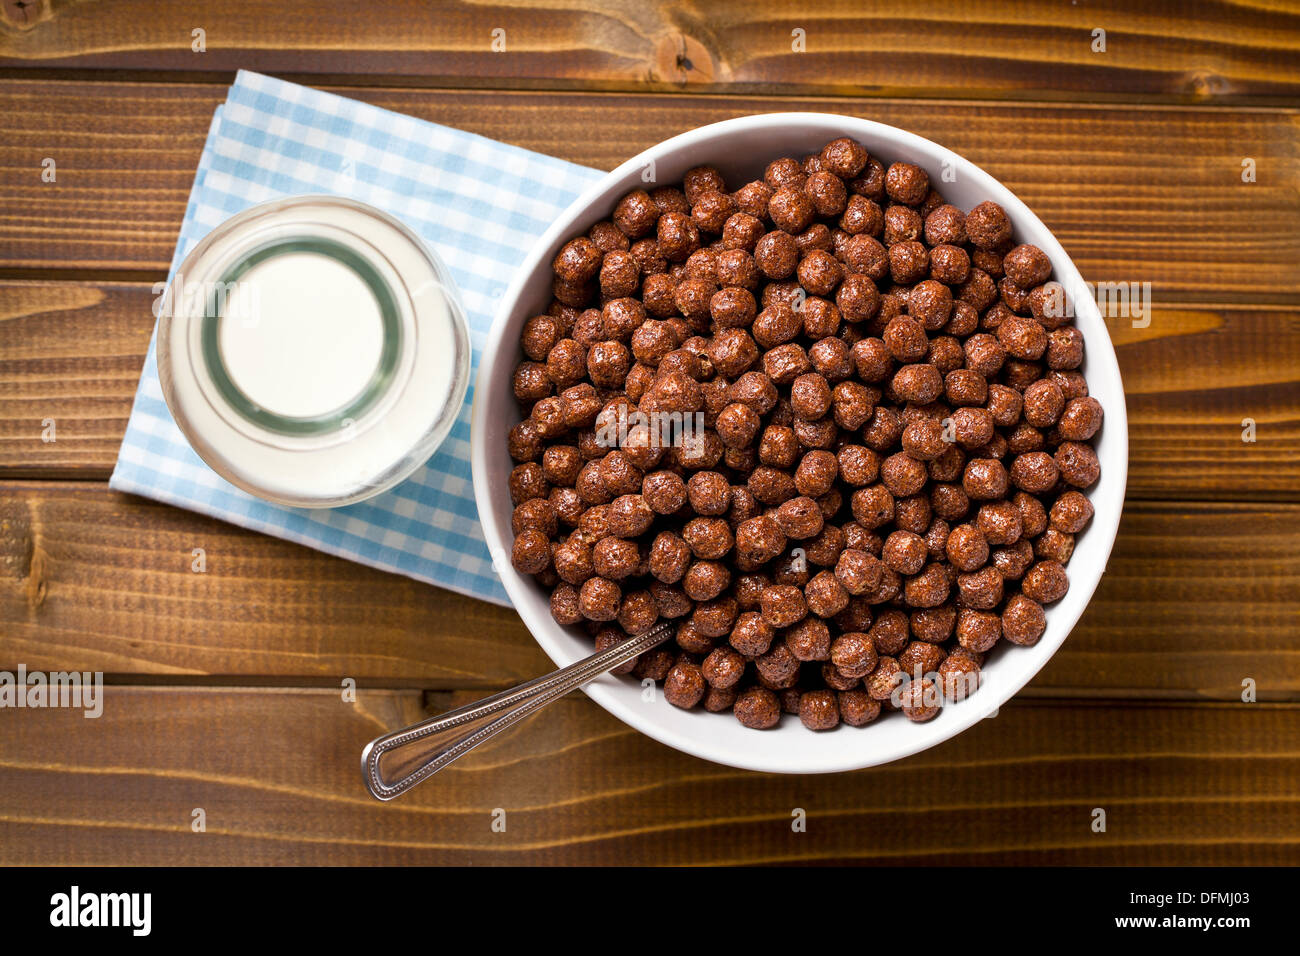 Vista superior de chocolate en un tazón de cereales y leche en la jarra Foto de stock